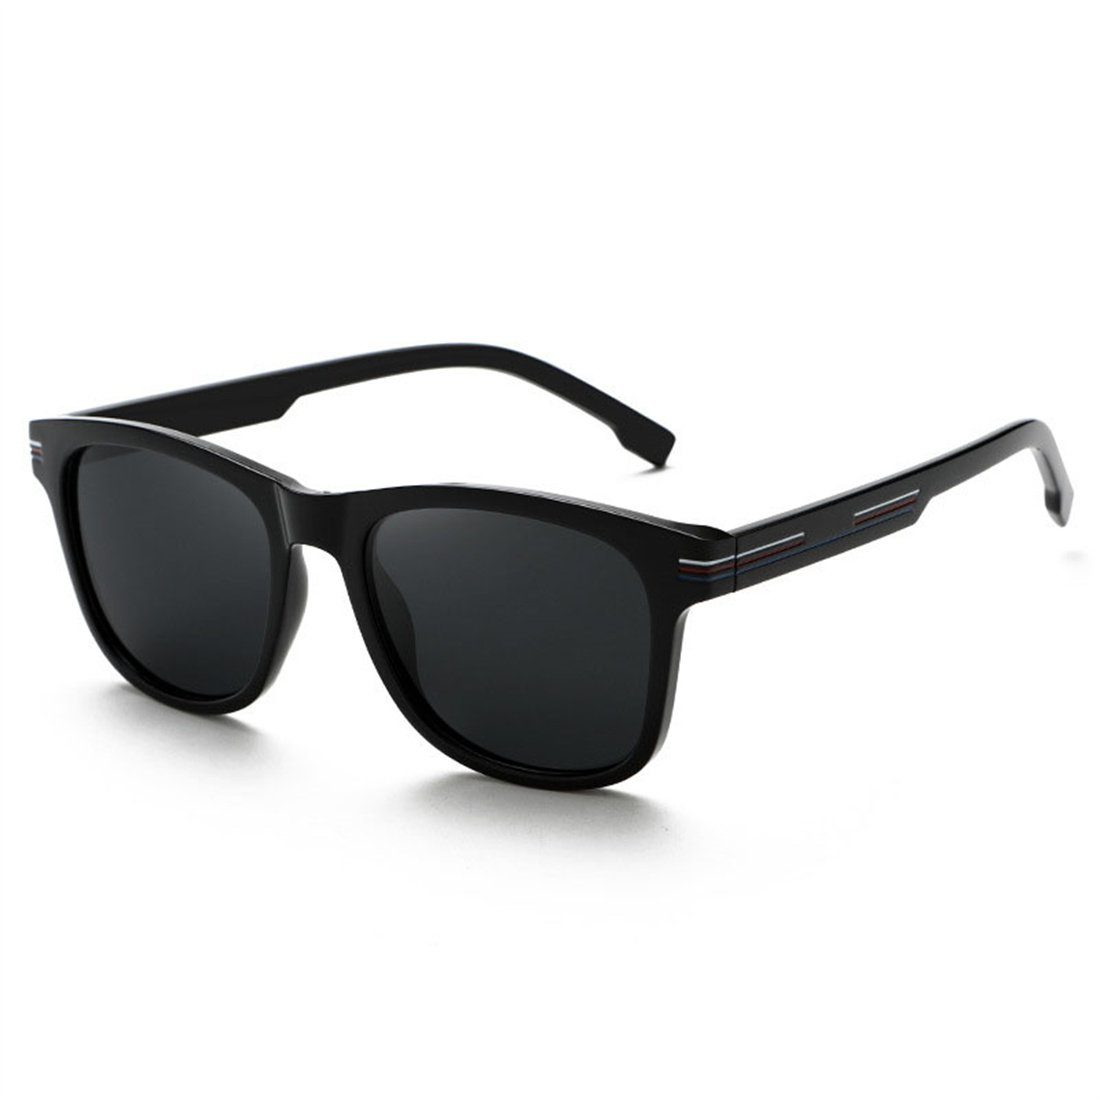 für Outdoor-Sonnenbrille DÖRÖY Polarisierende Sonnenbrille Männer, Retro-Sonnenbrille